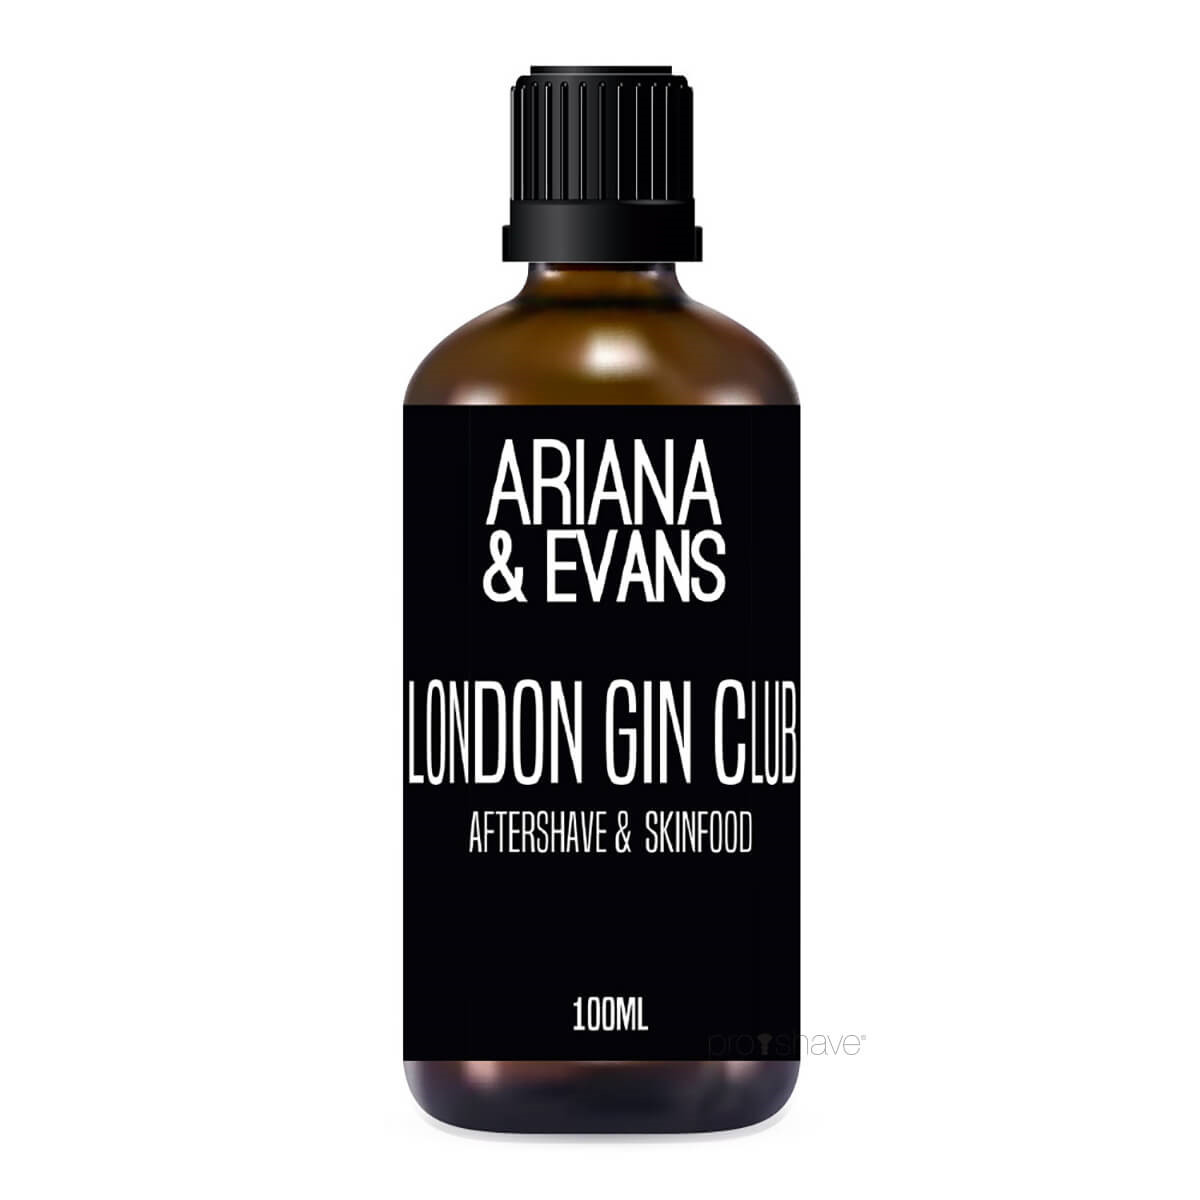 Billede af Ariana & Evans Aftershave, London Gin Club, 100 ml.